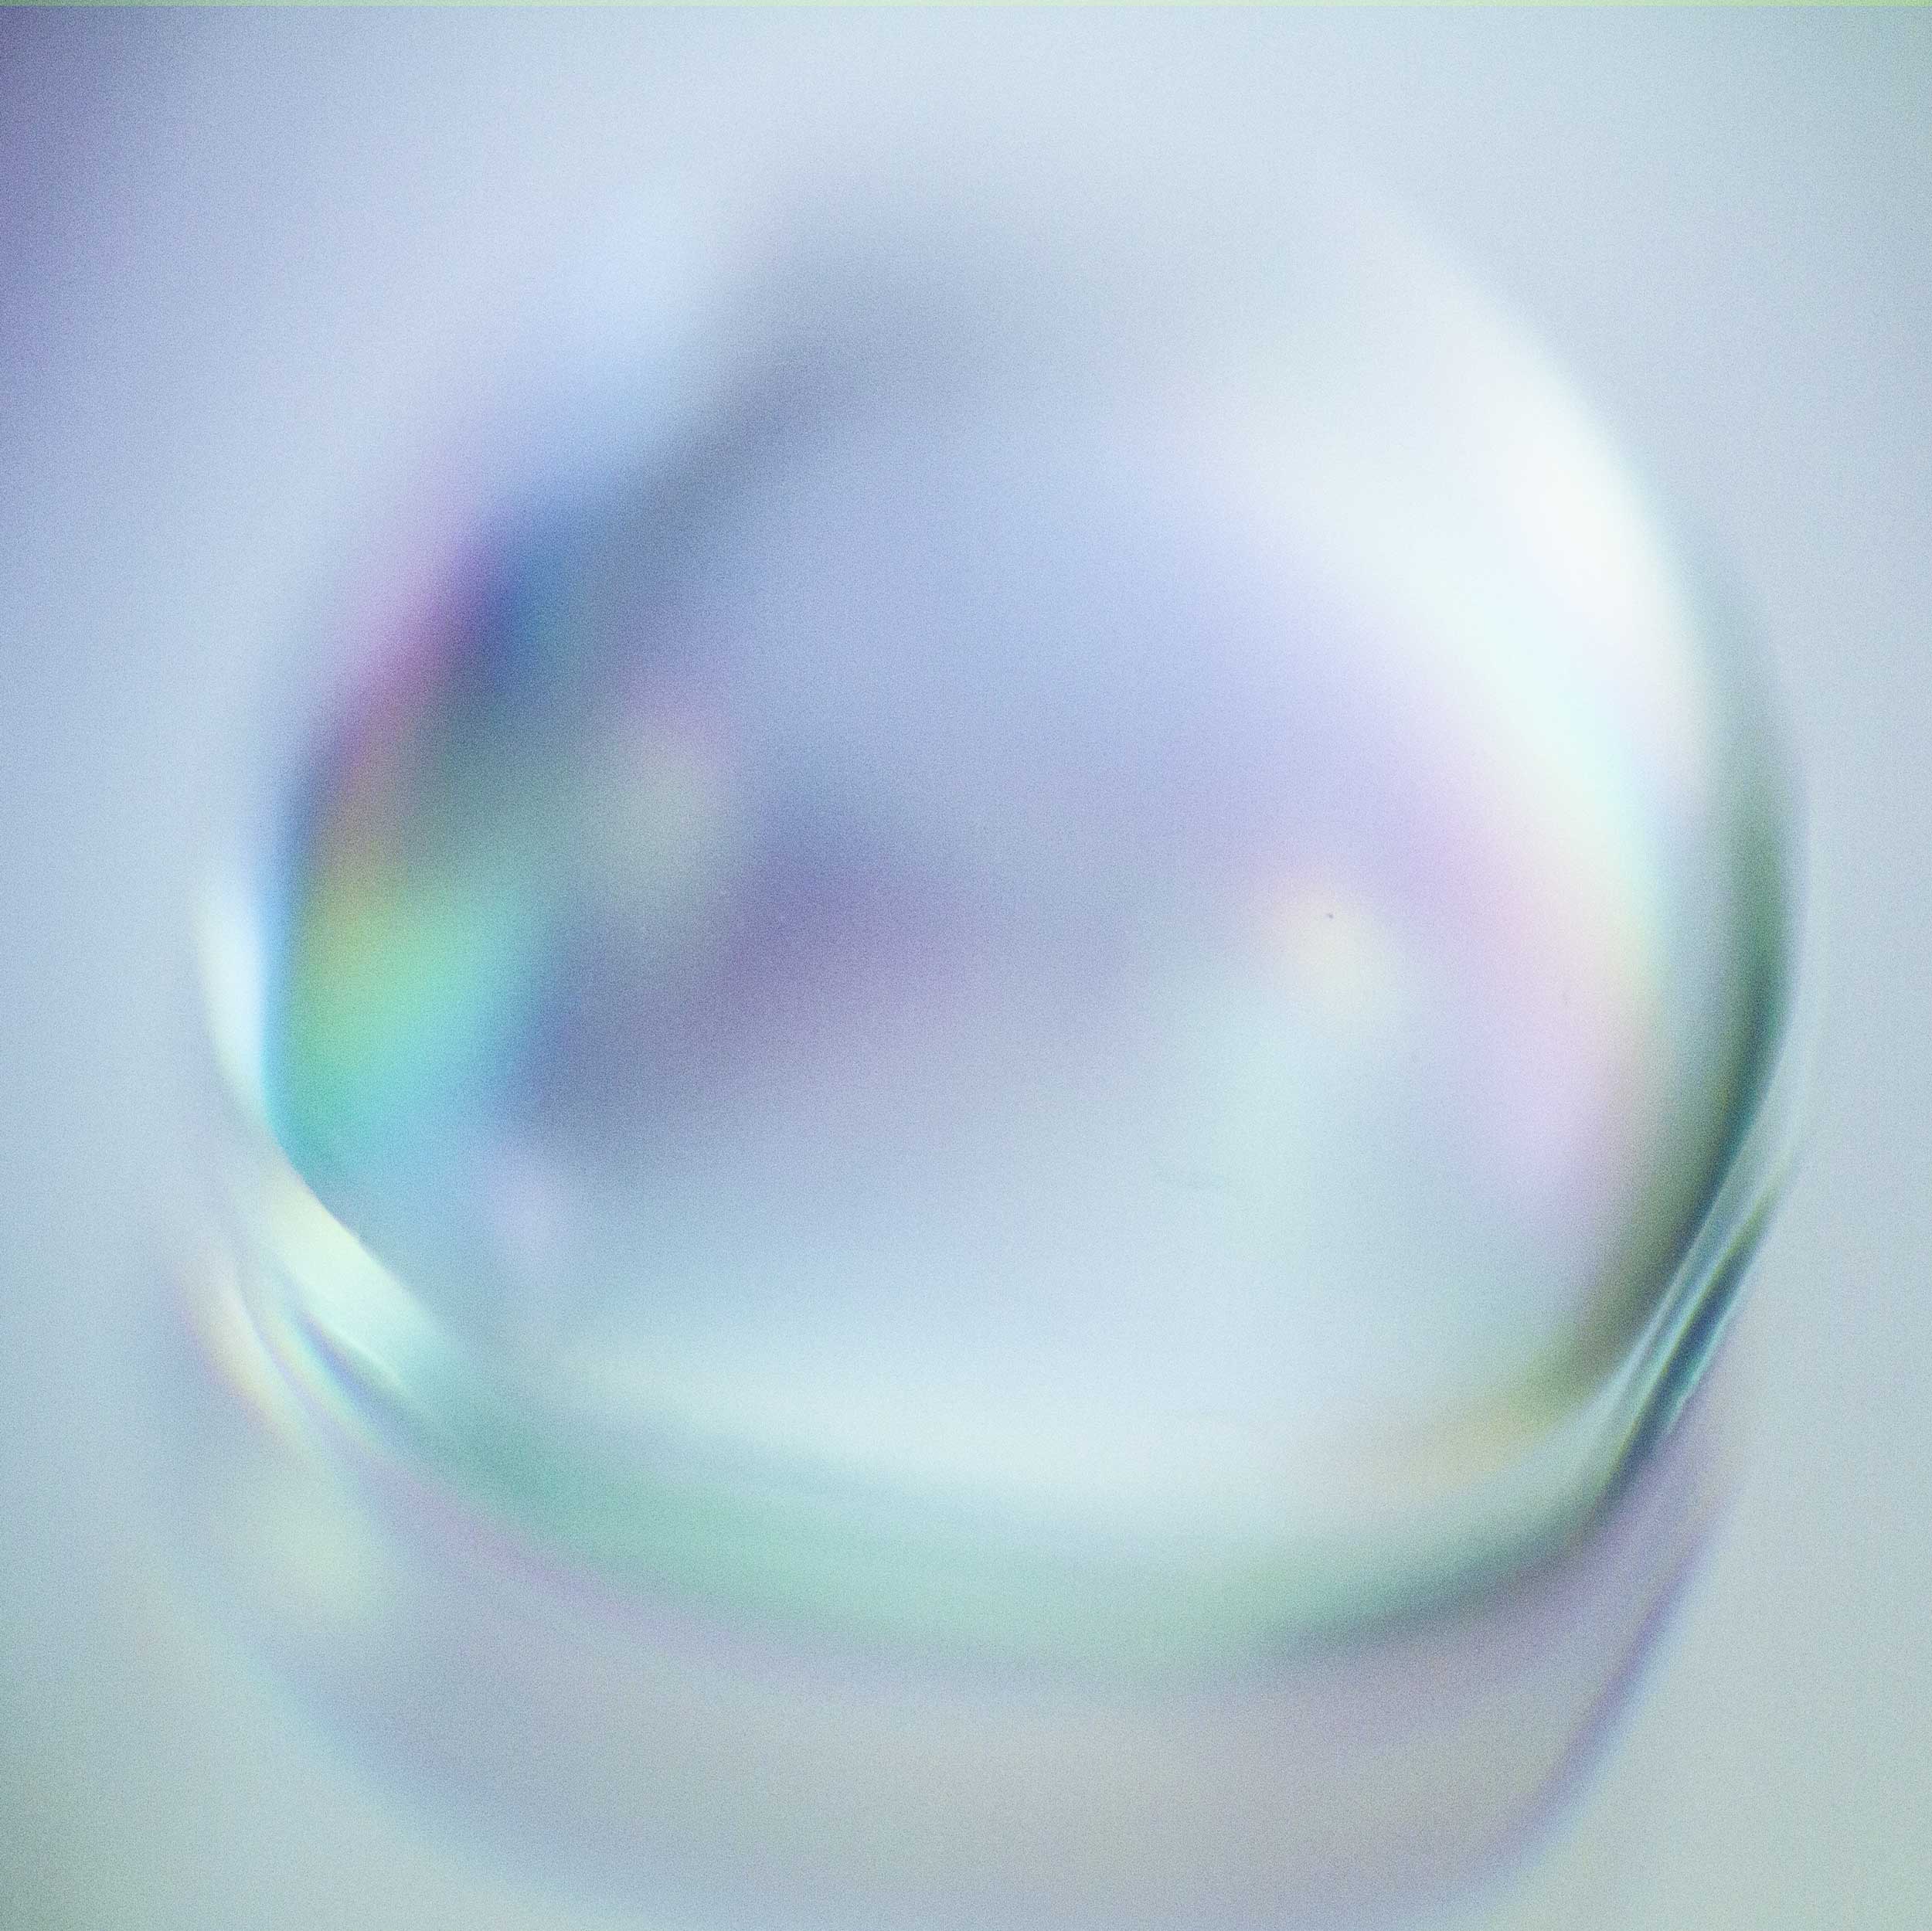 Bubble2_500k.jpg